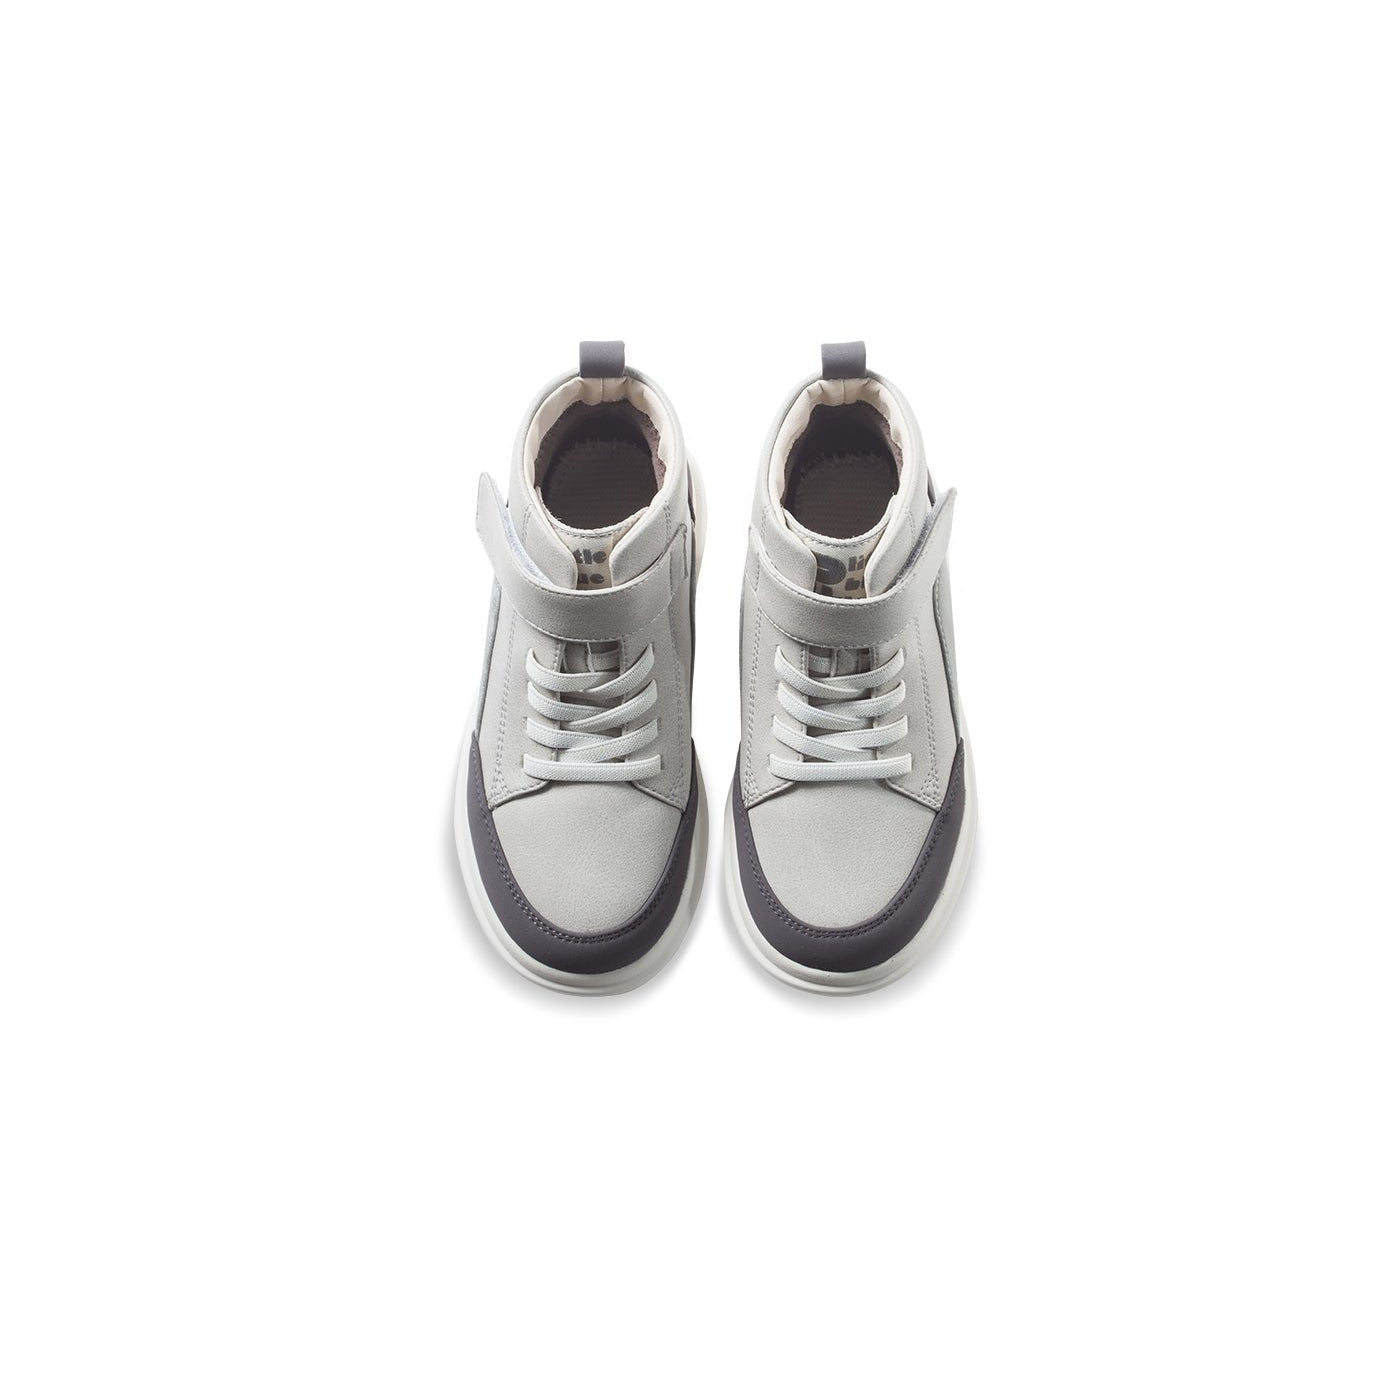 Moorea Anti-slip Kids Grey Mid-top Sneakers - 0cm